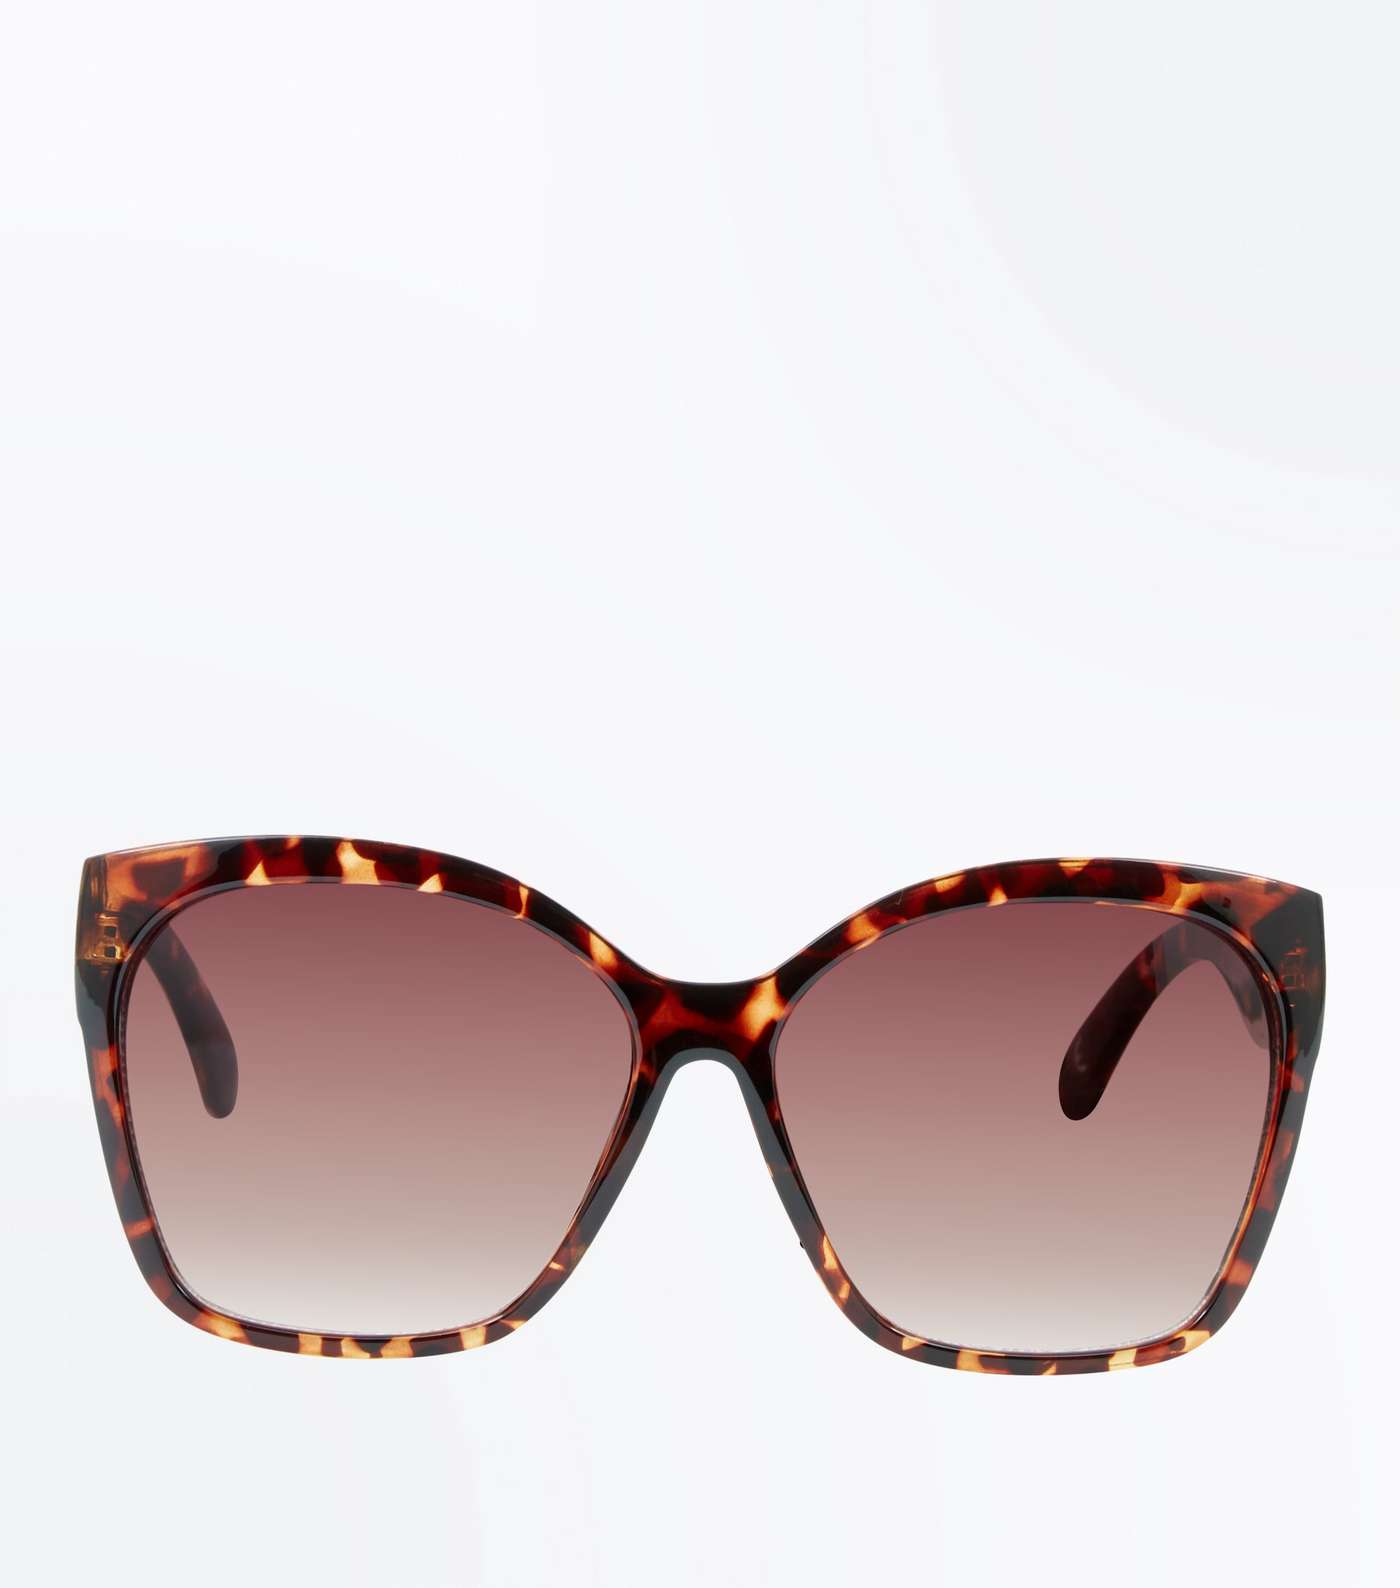 Dark Brown Tortoiseshell Oversized Sunglasses Image 3